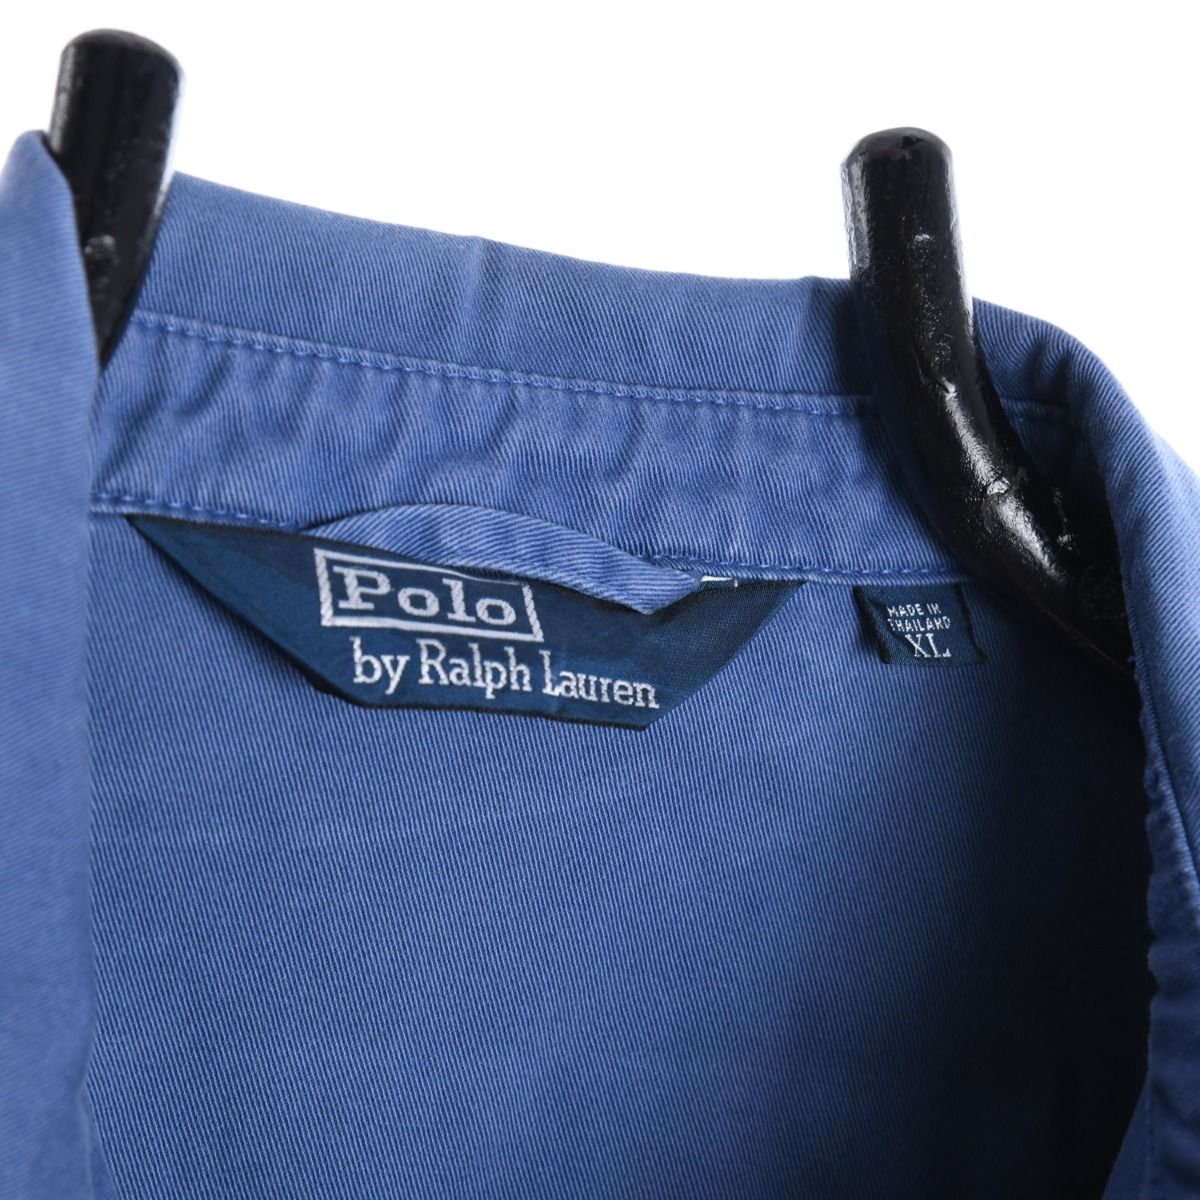 Polo Ralph Lauren Harrington Jacket